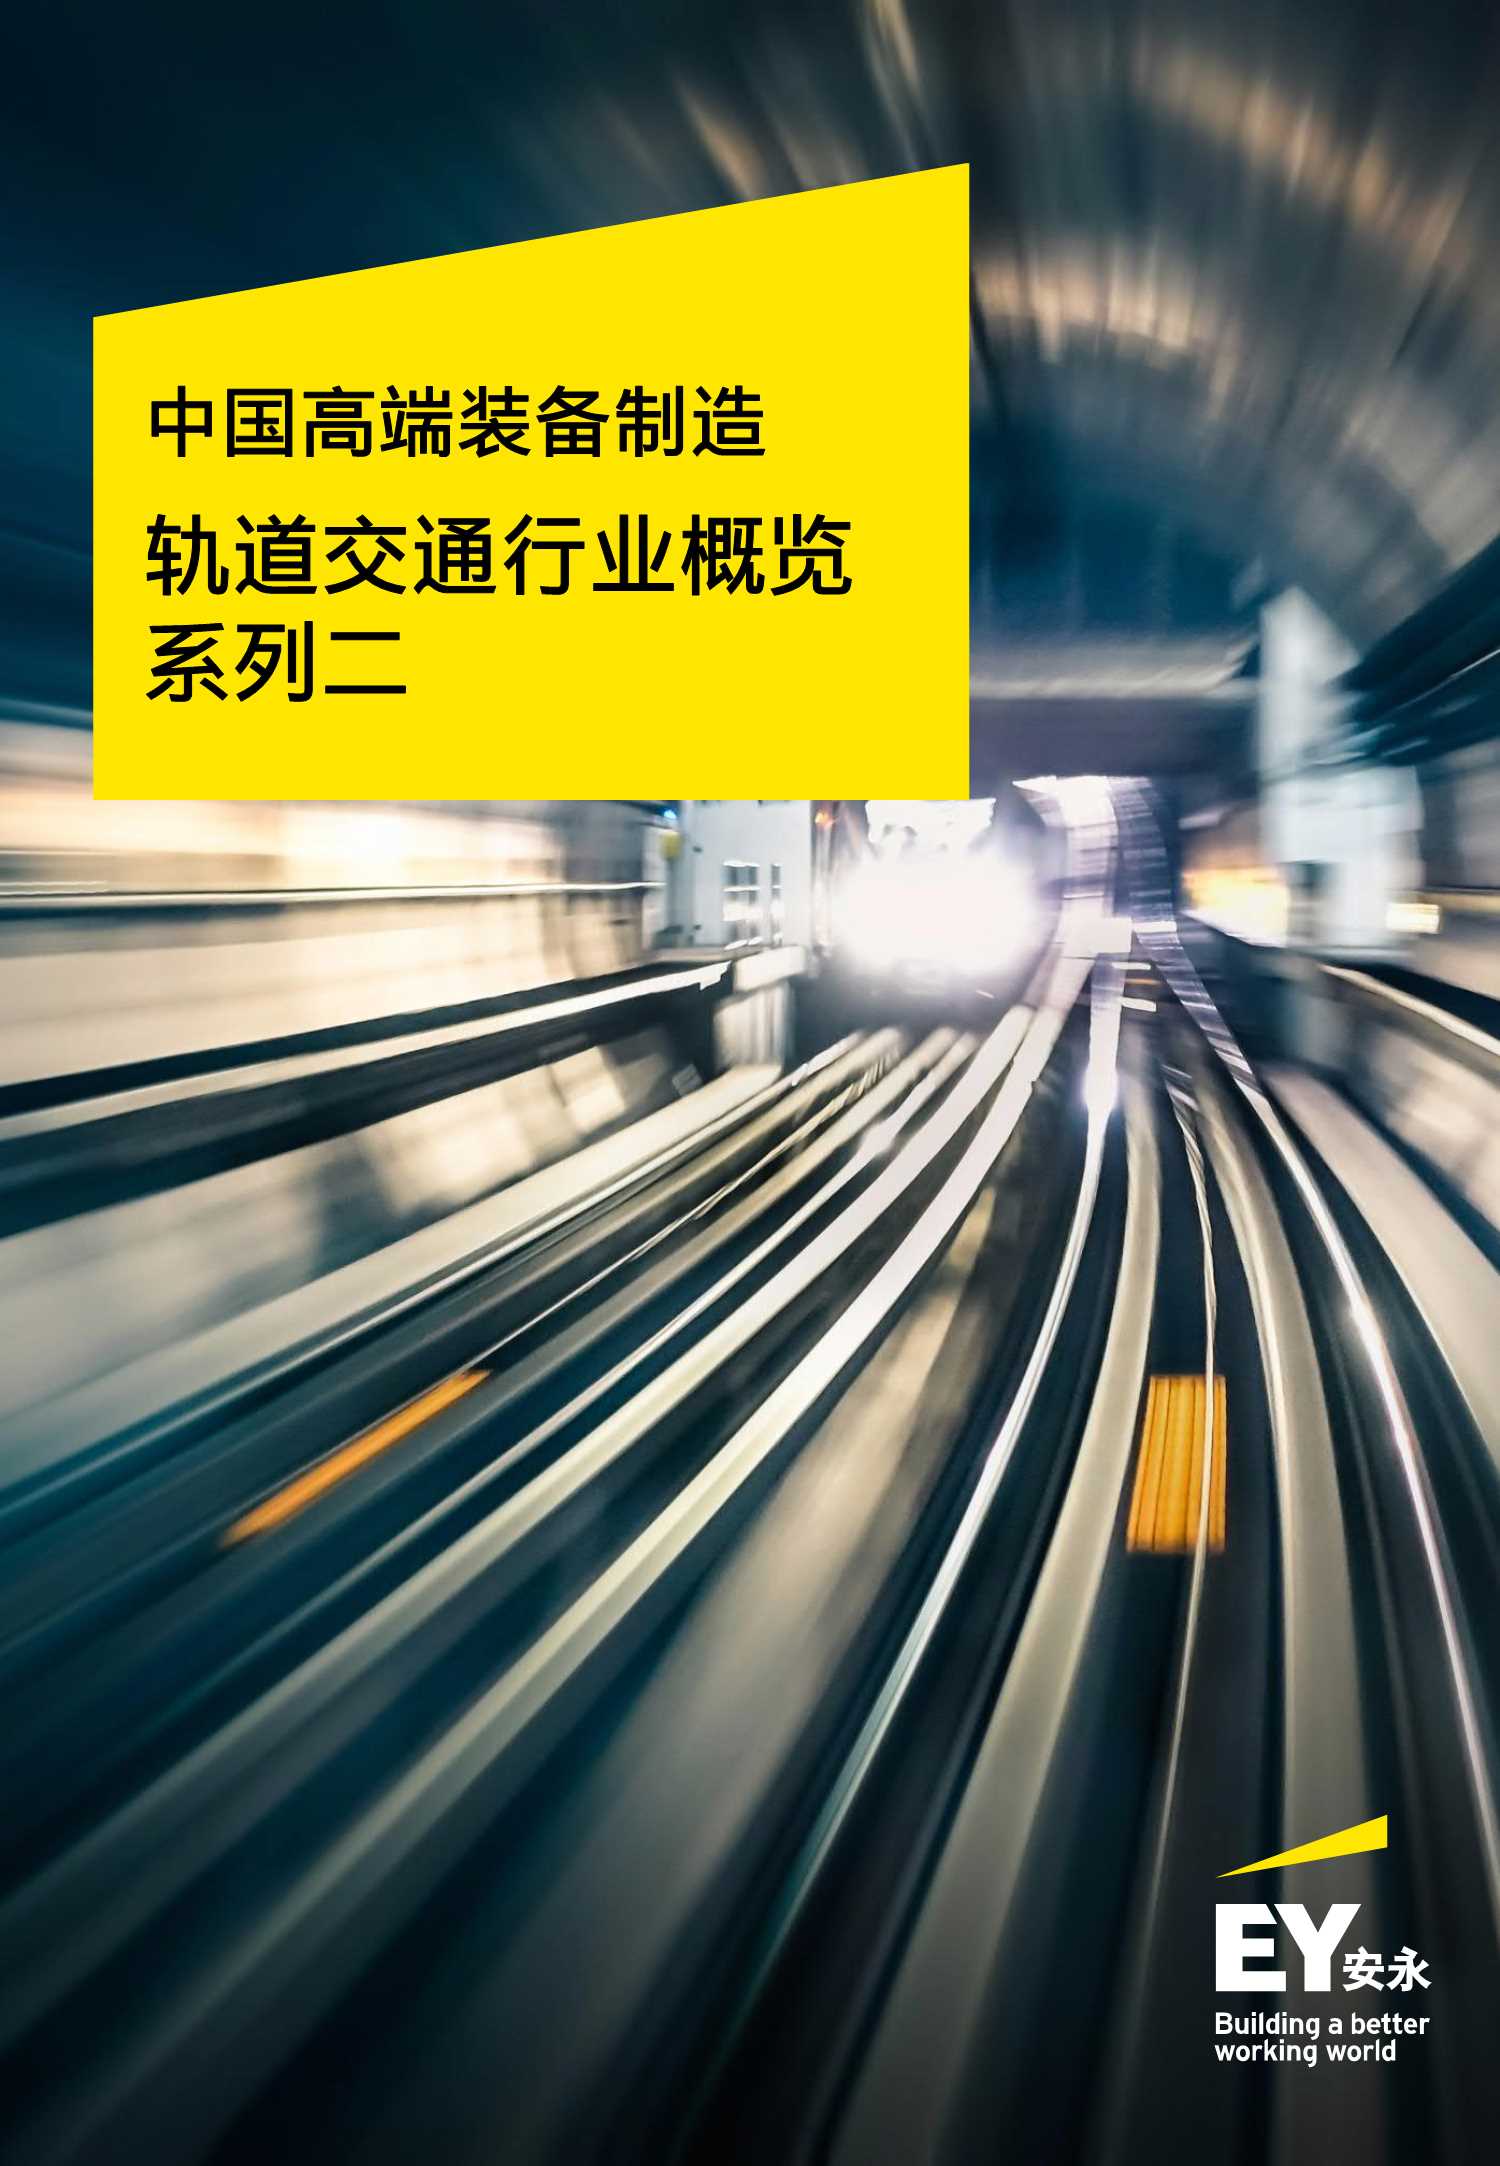 安永-中国高端装备制造——轨道交通行业概览系列二-2021.07-25页